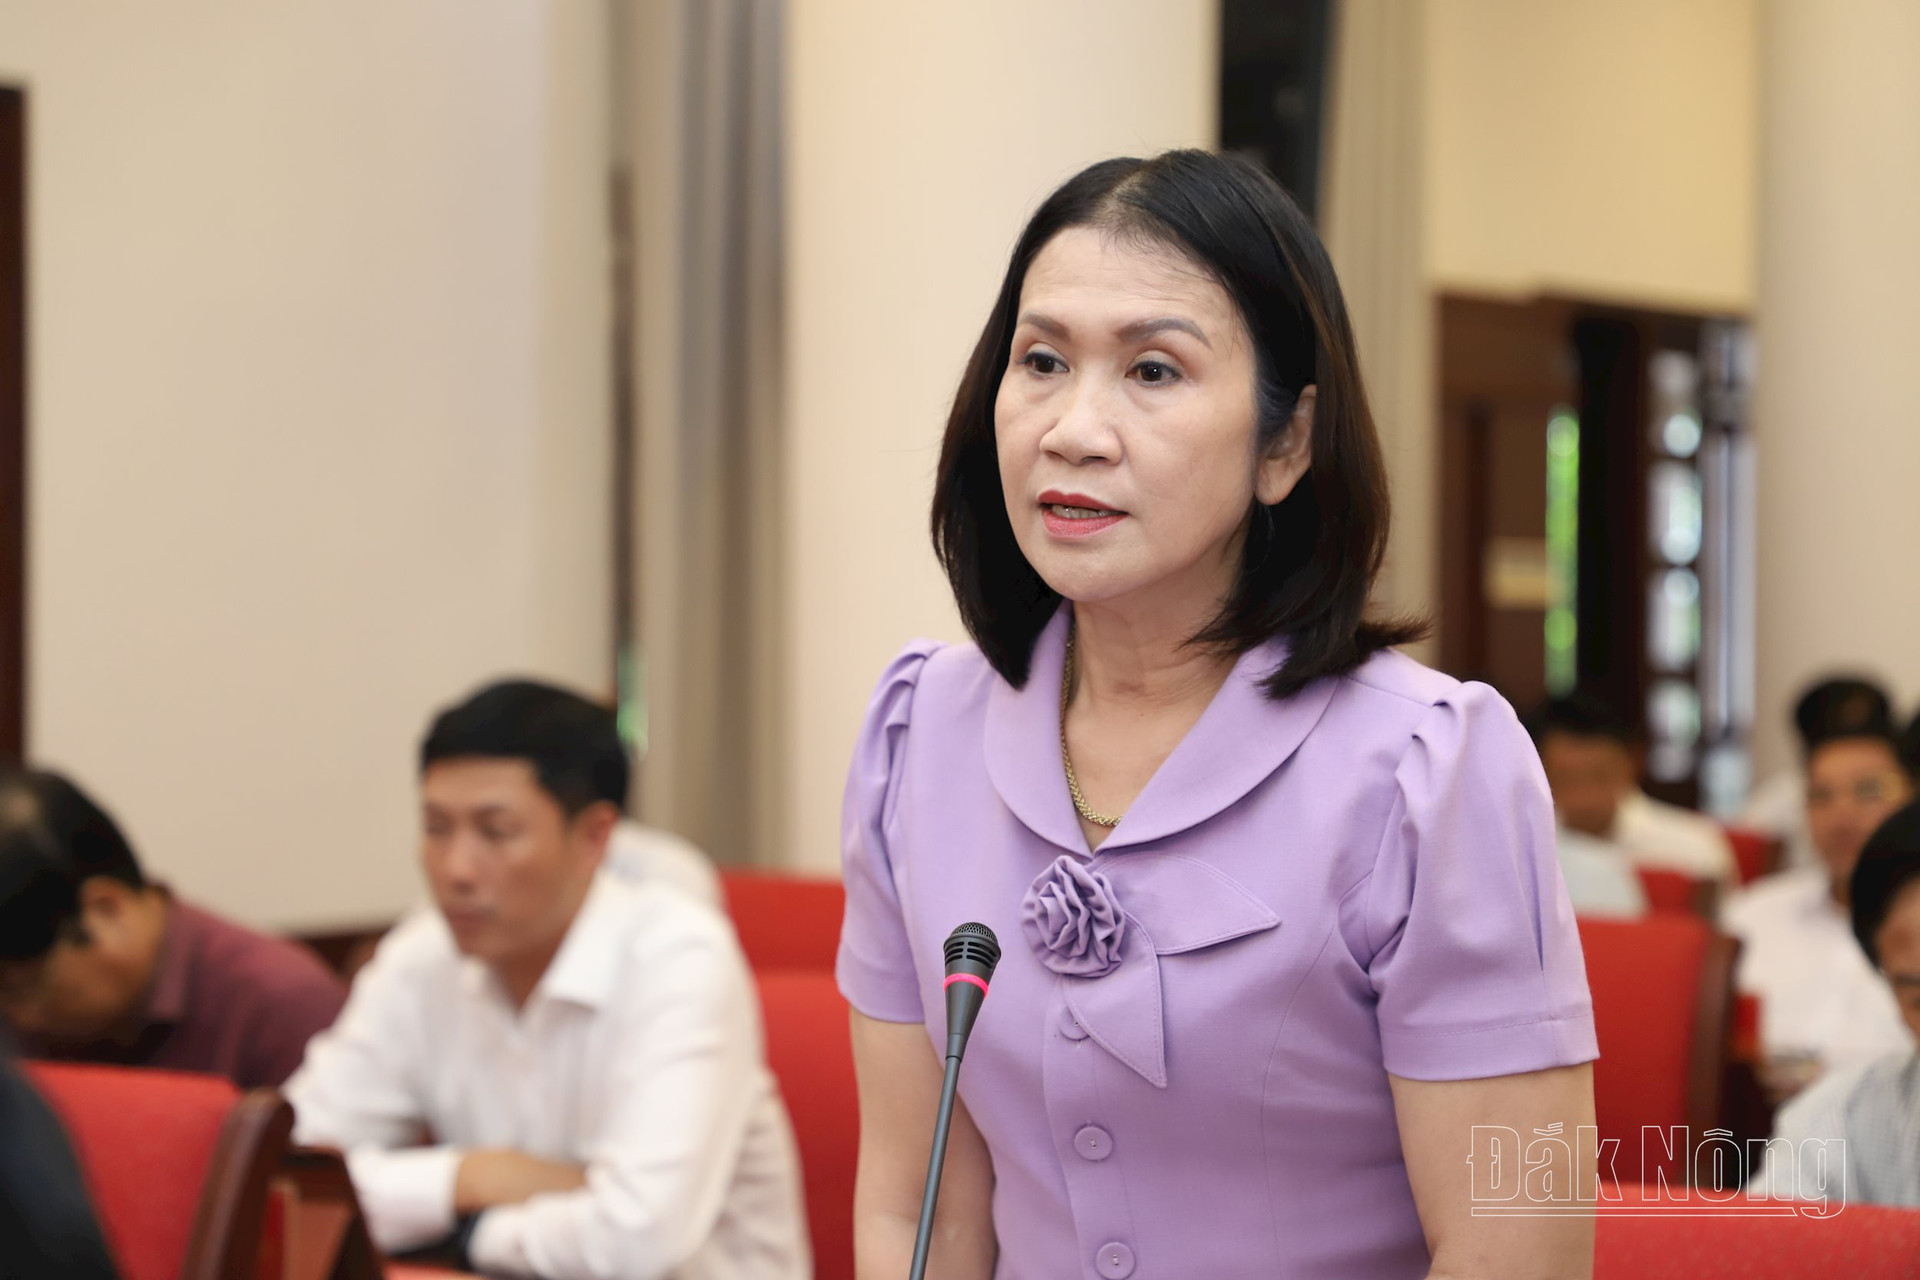 Đồng chí Tôn Thị Ngọc Hạnh, TUV, Phó Chủ tịch UBND tỉnh Đắk Nông giải trình về các vấn đề liên quan đến công tác giáo dục